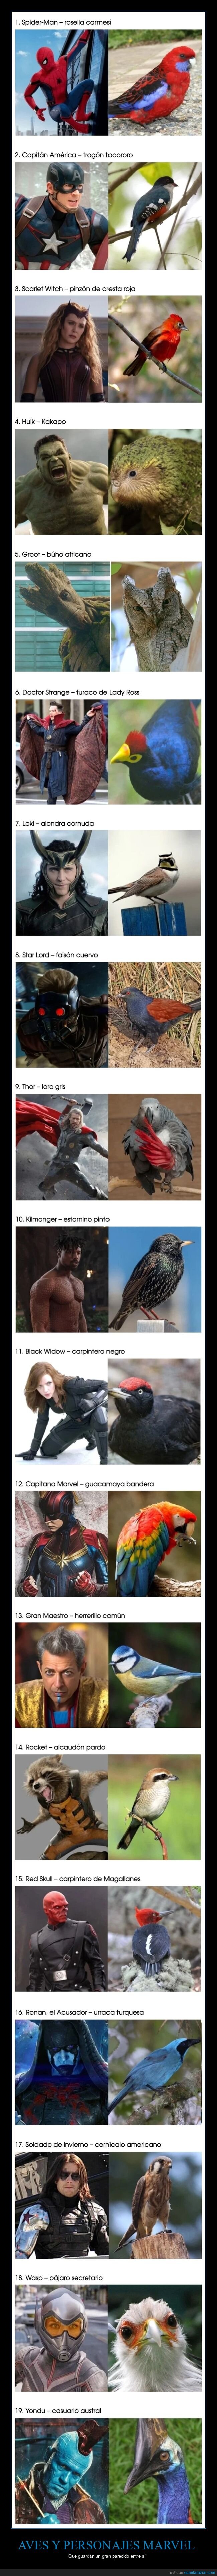 aves,personajes marvel,parecidos